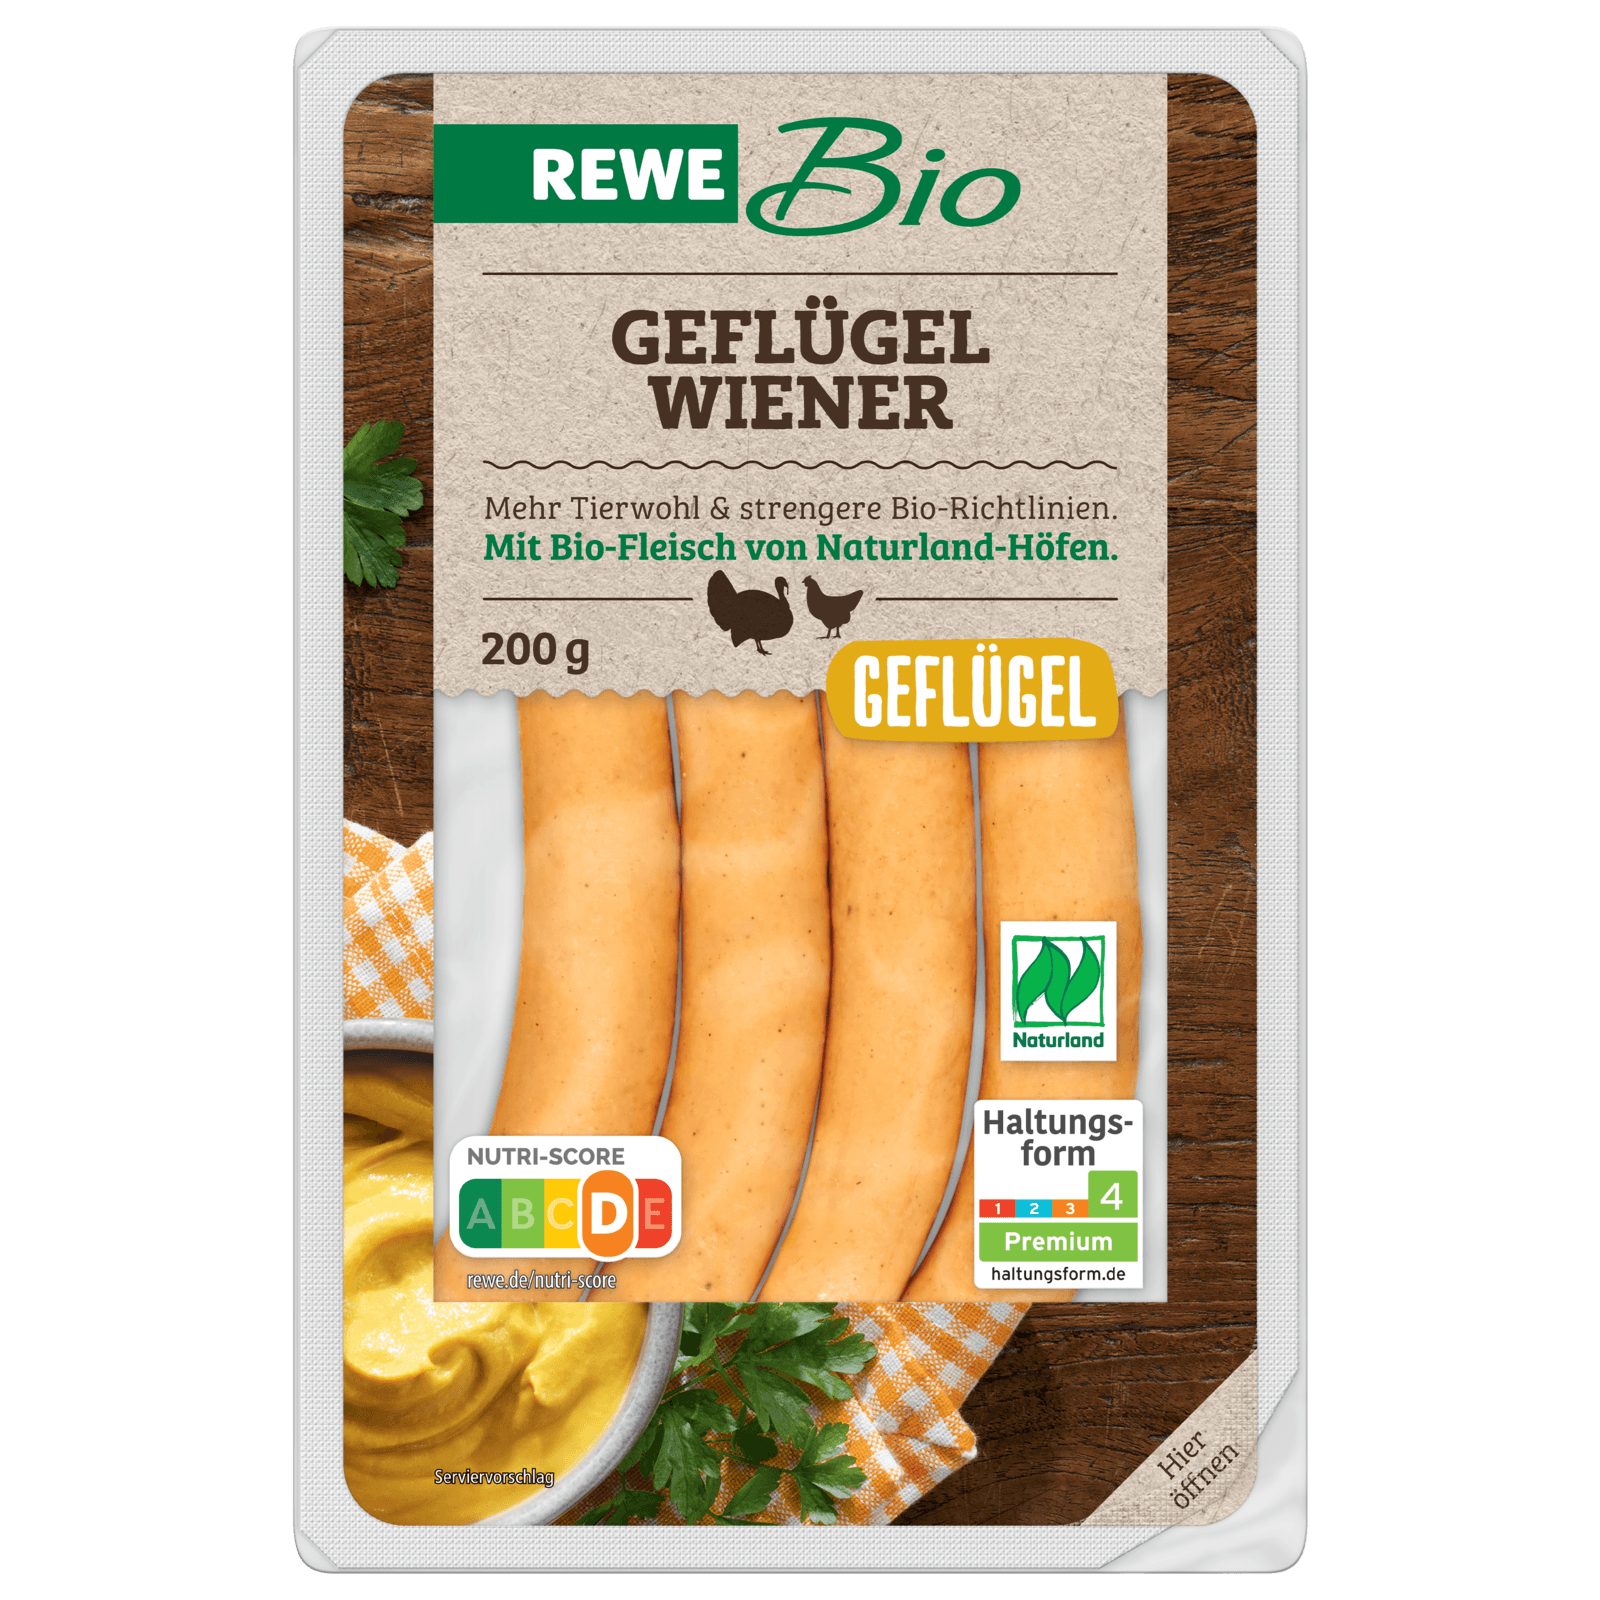 REWE Bio Geflügel Wiener 200g